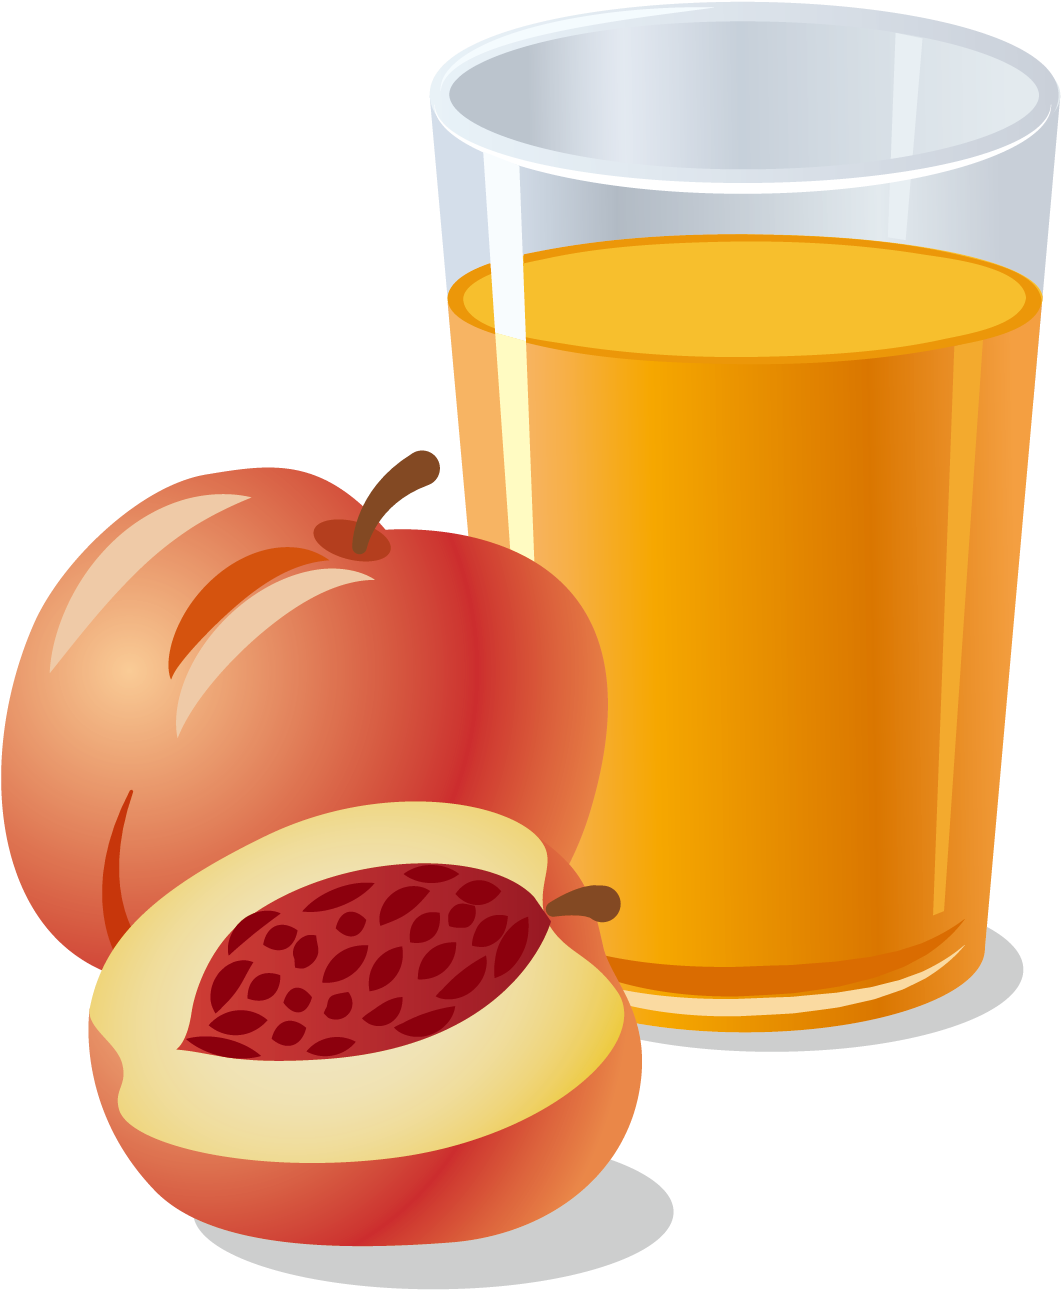 Orange Juice Apple Juice Pomegranate Juice - Vector Graphics (1772x1772)